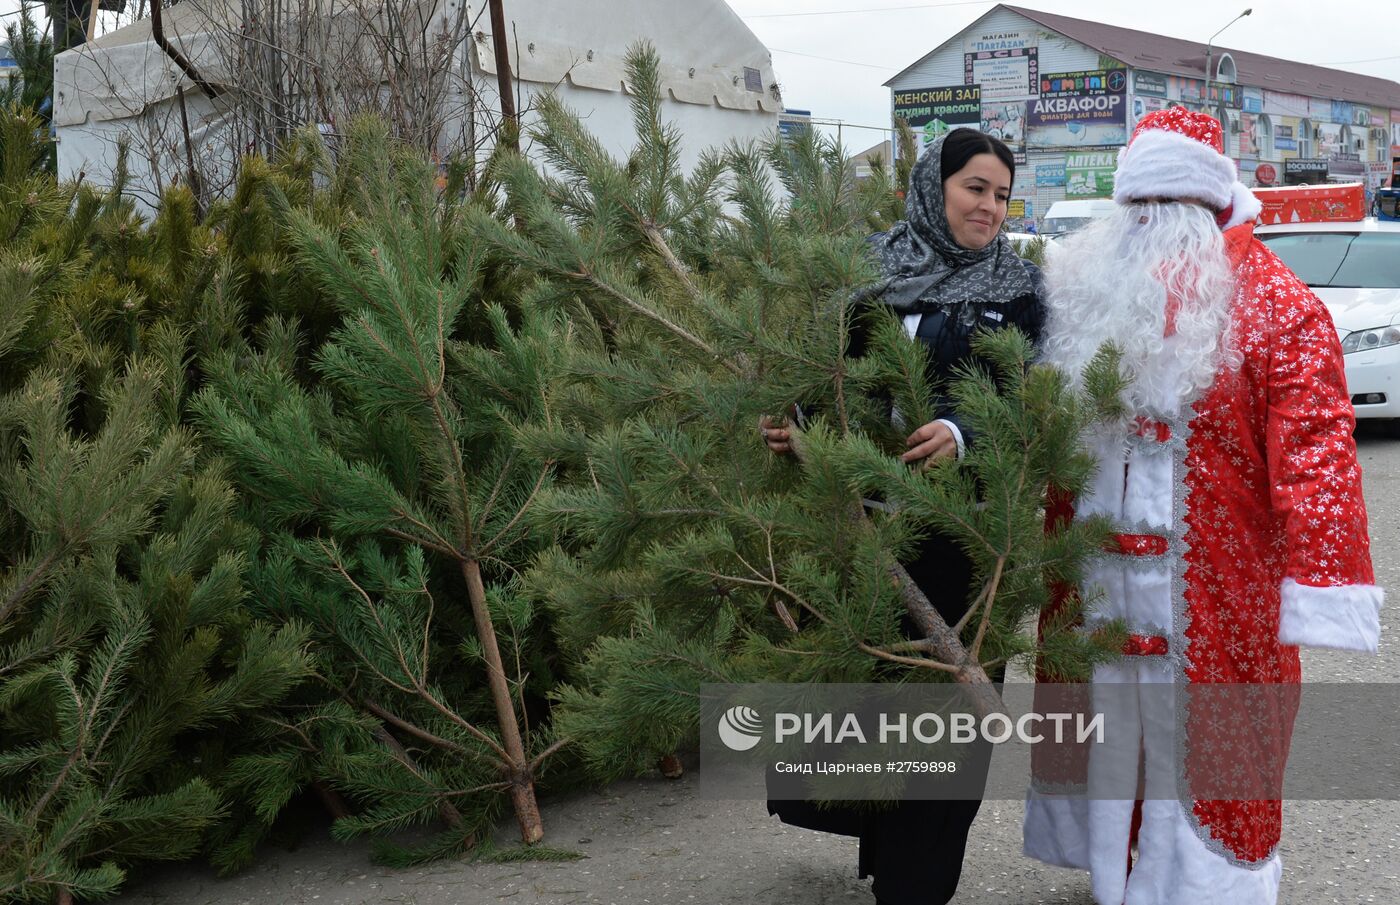 Подготовка к празднованию Нового года в Грозном